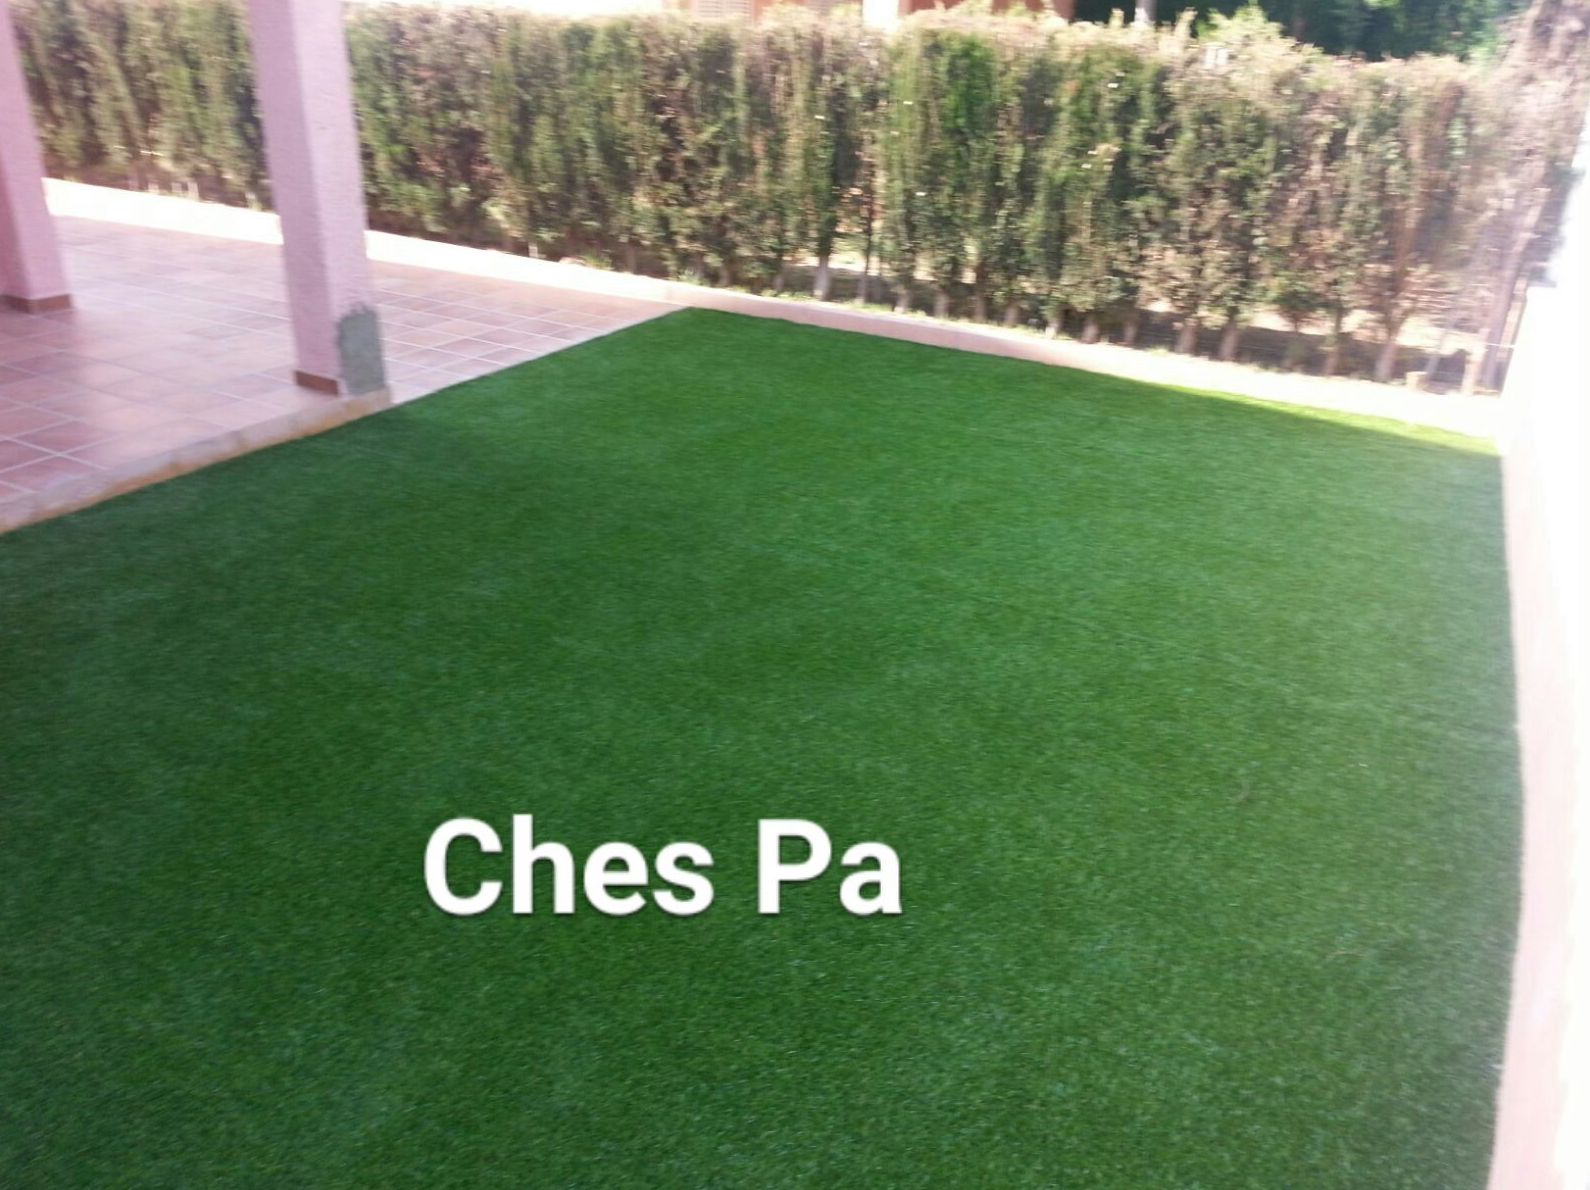 Proyecto Ches Pa. Después en vivienda particular en Valencia